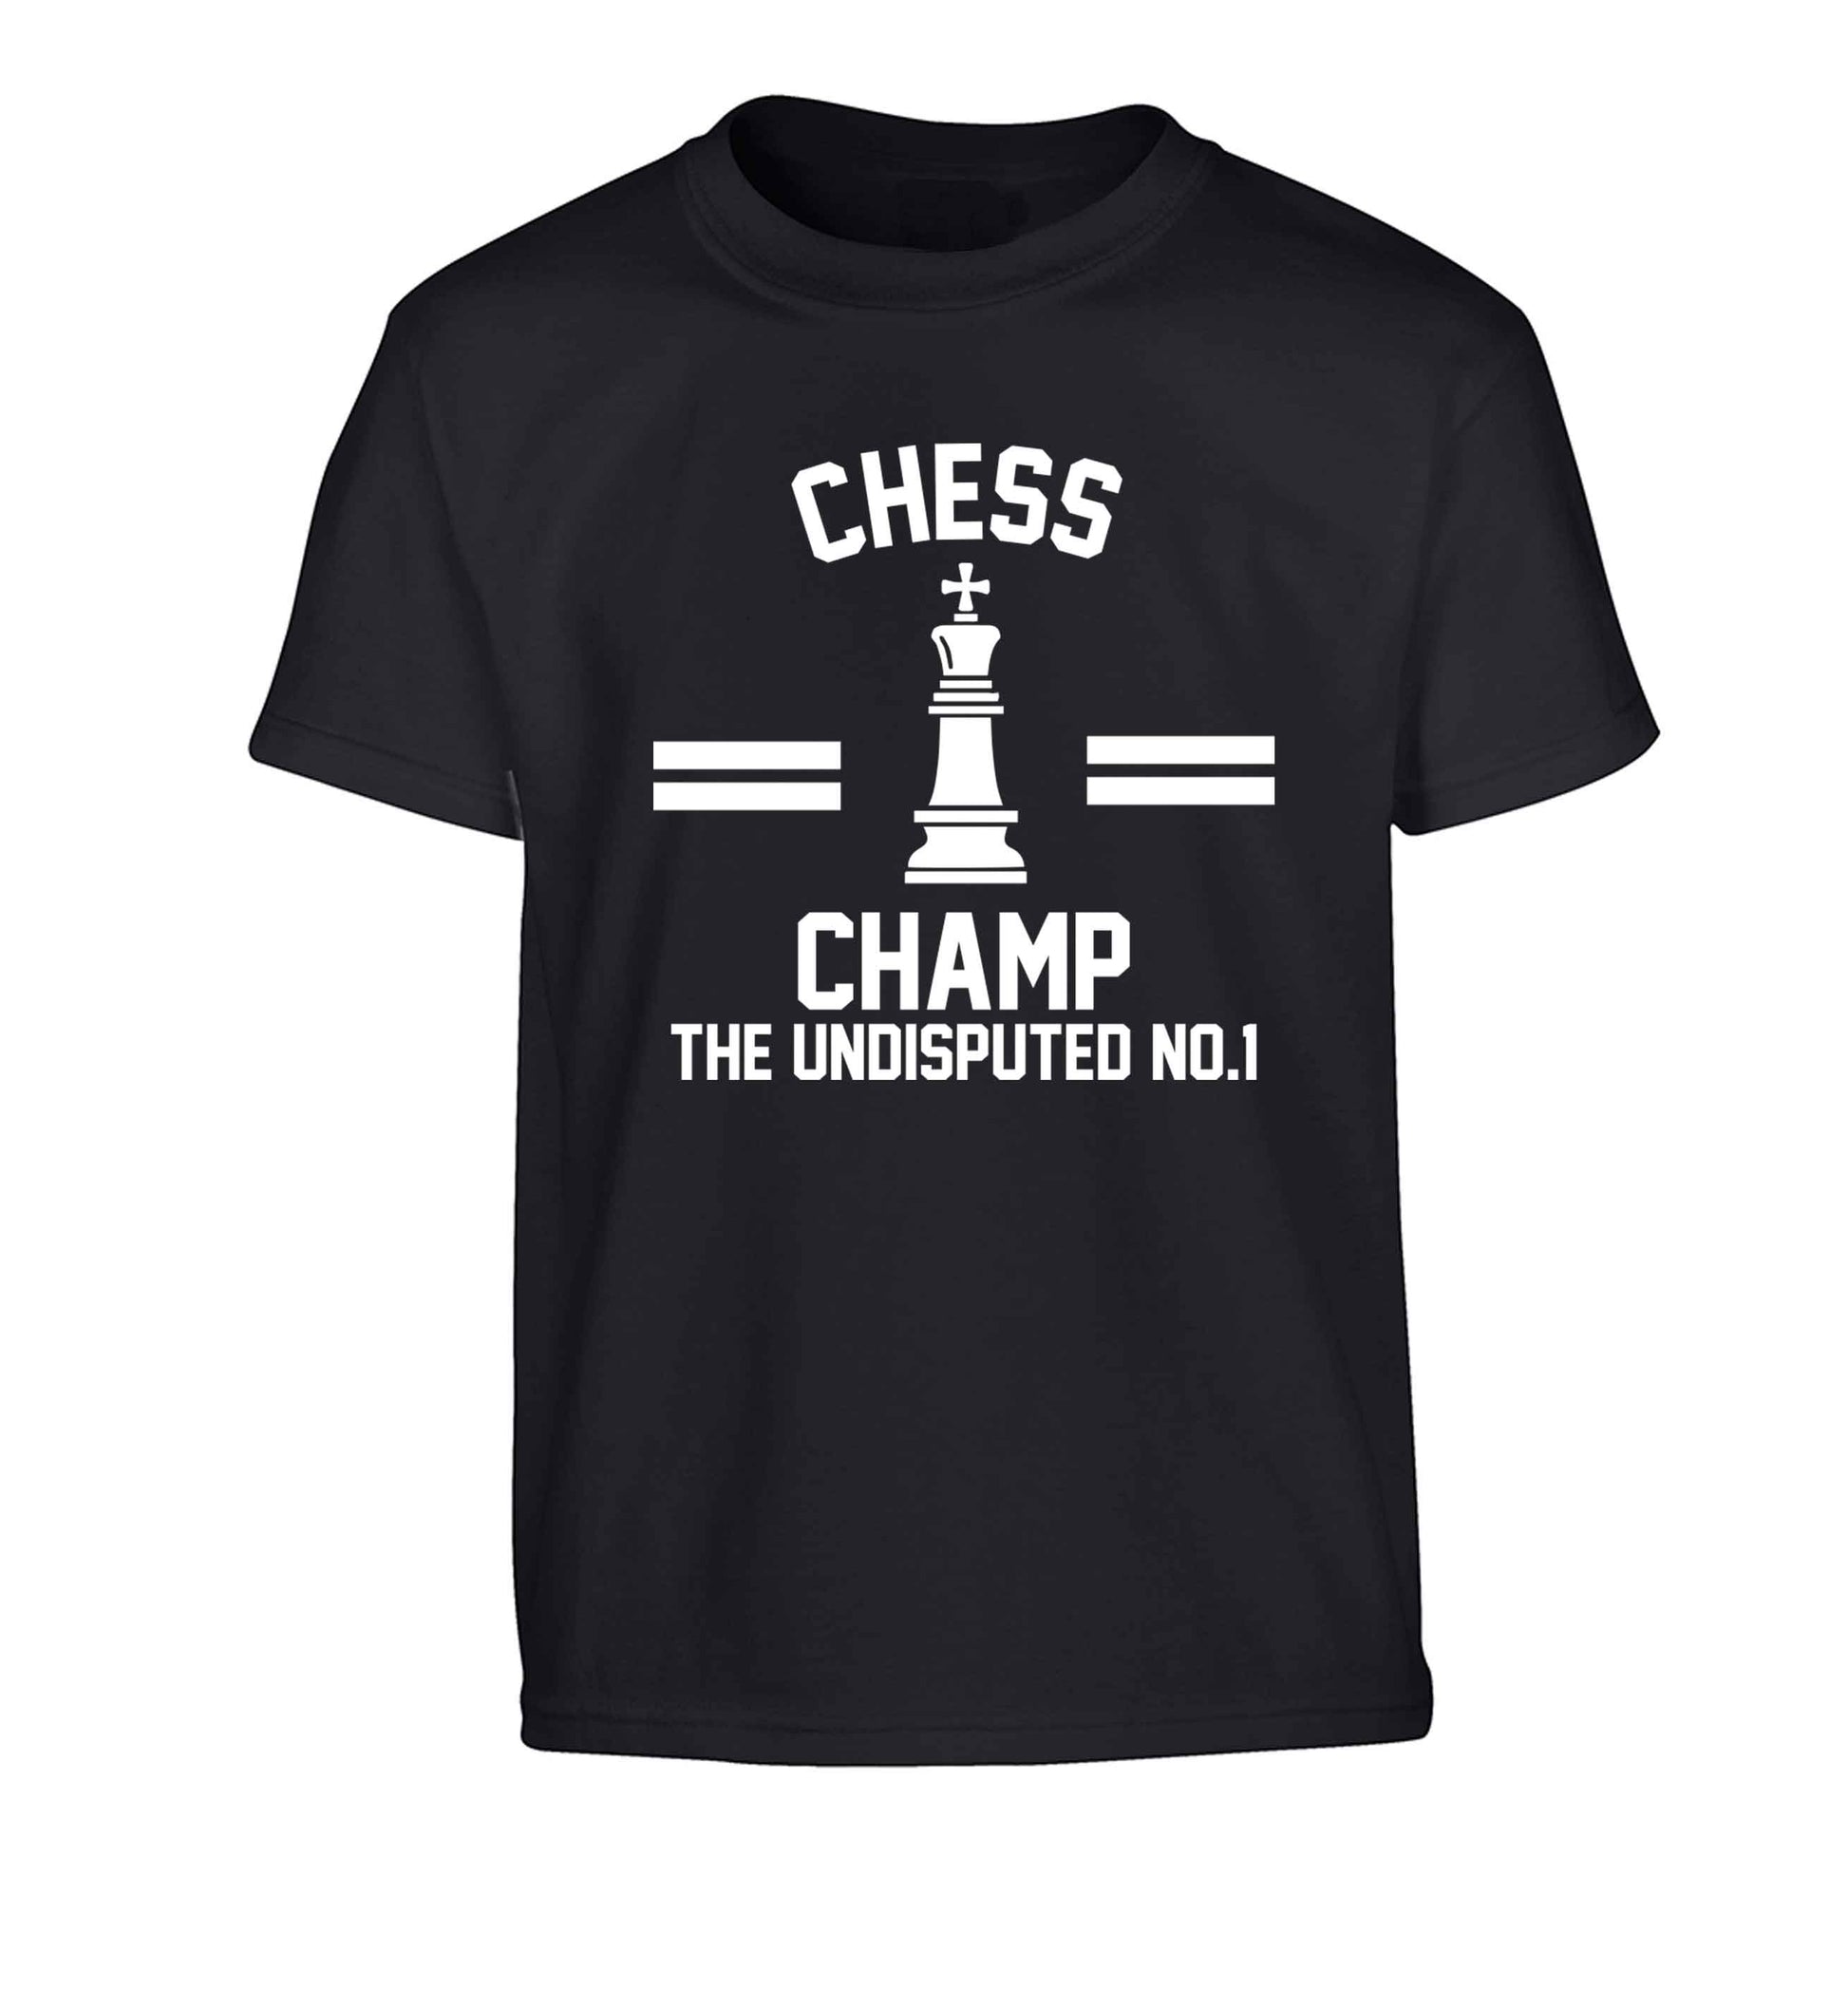 Undisputed chess championship no.1  Children's black Tshirt 12-13 Years